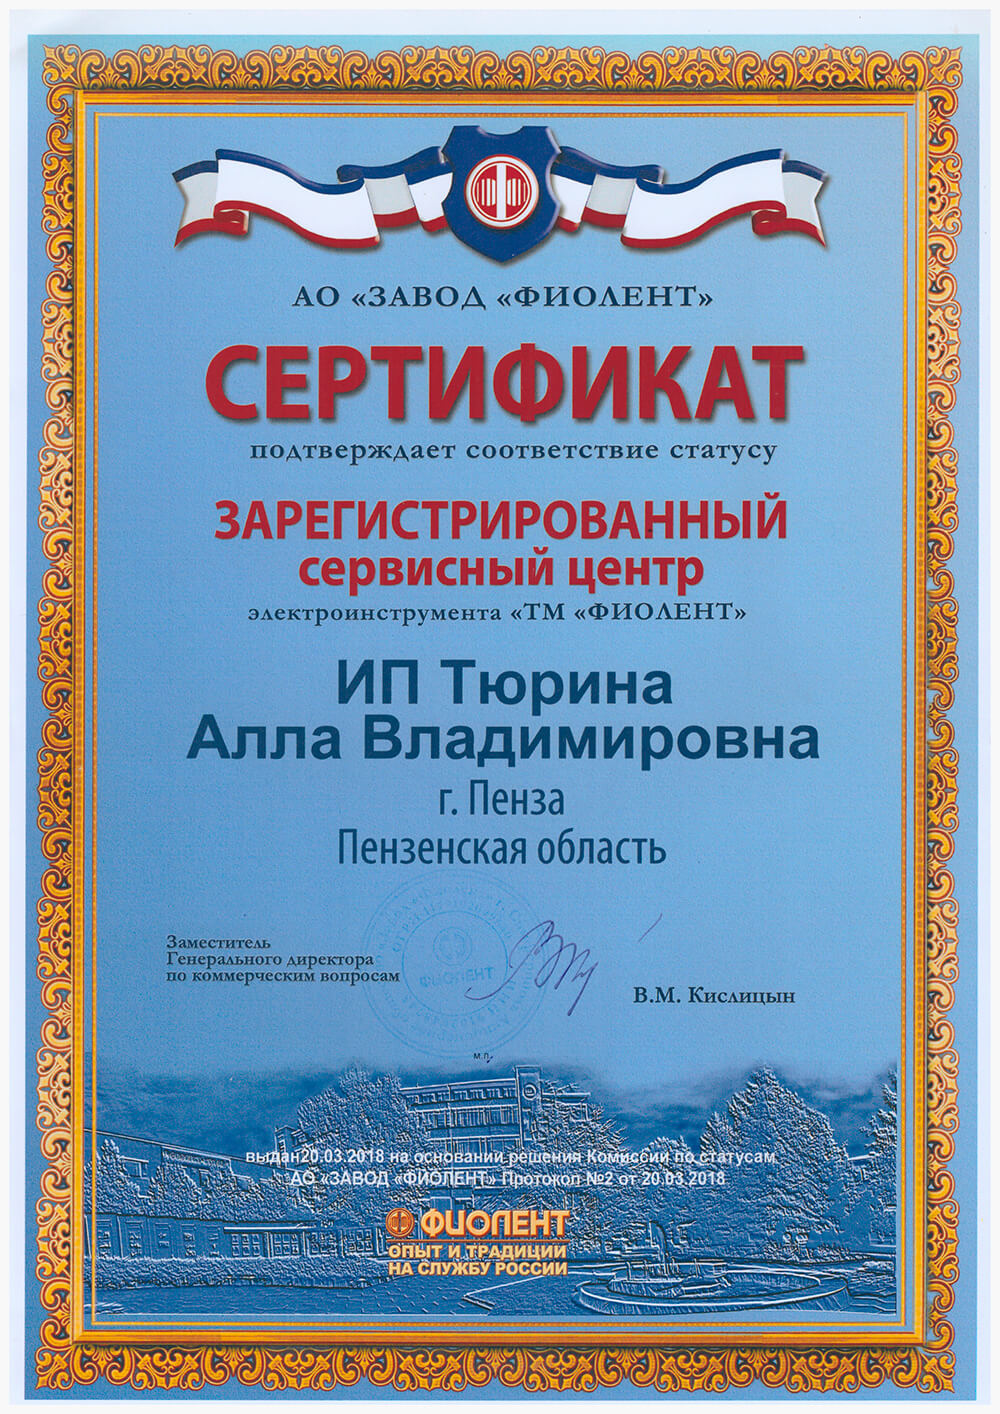 sertifikat2.jpg